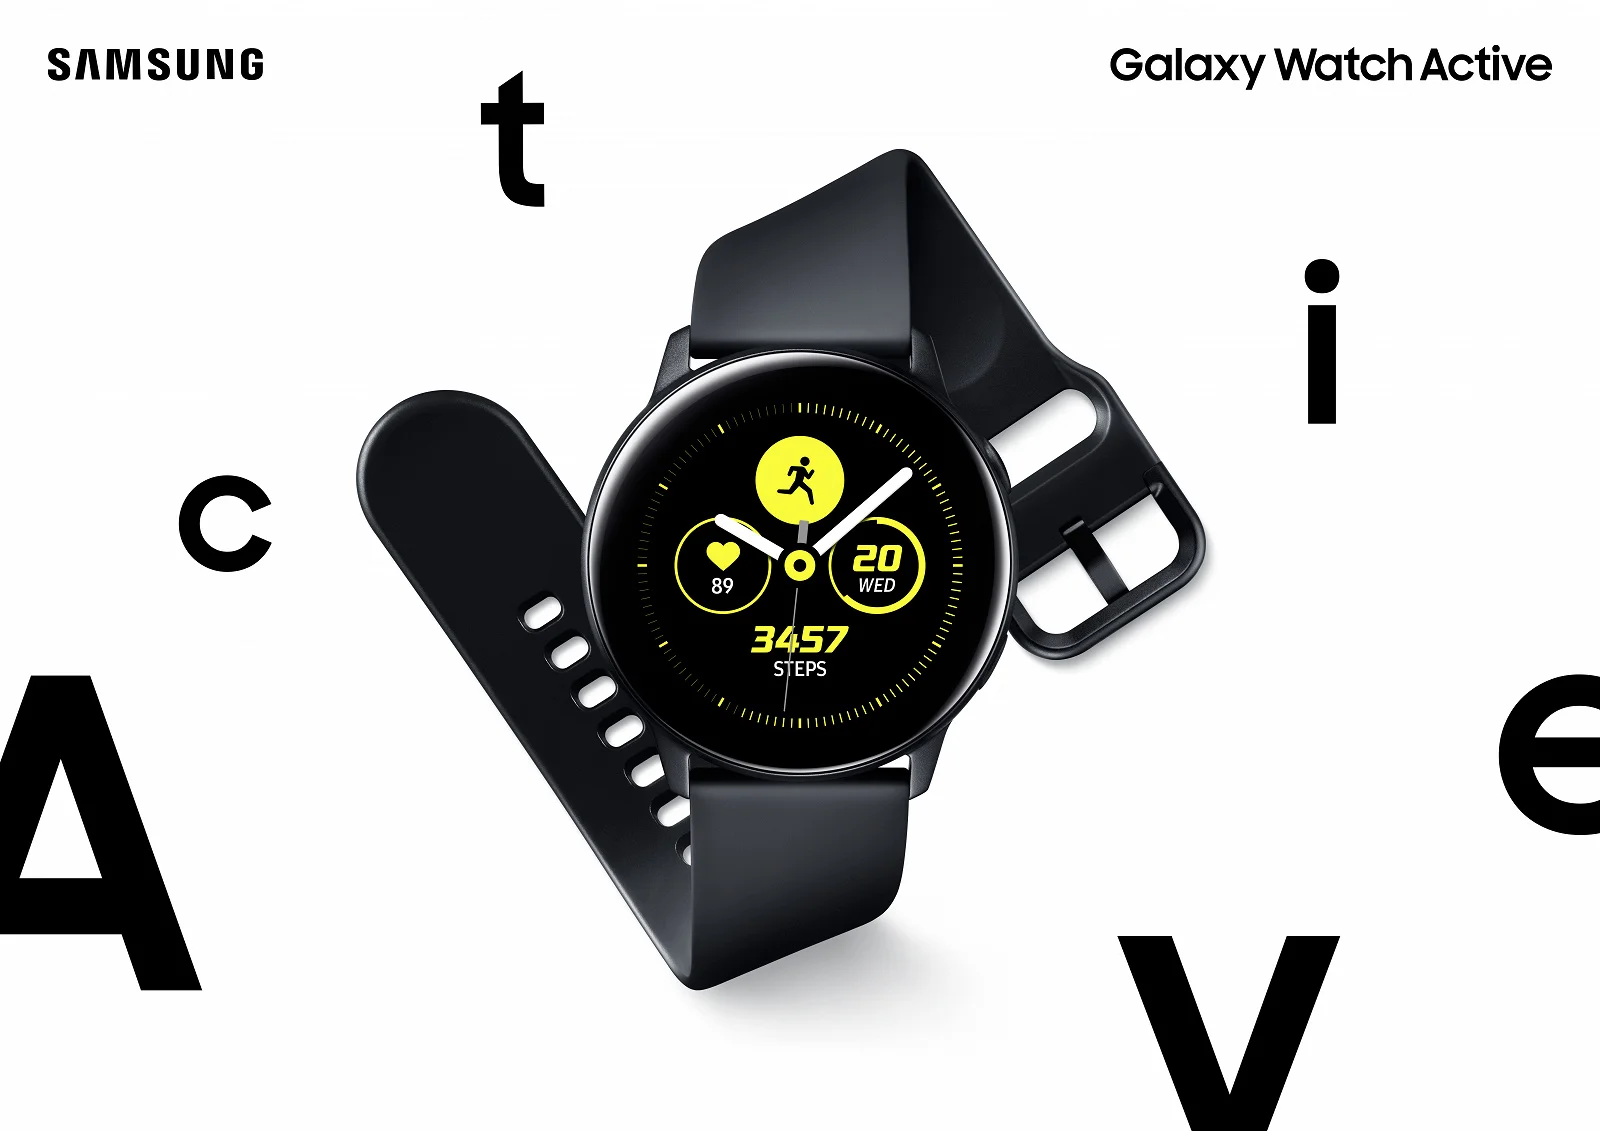 Анонс Samsung Galaxy Watch Active: обновленный дизайн, защита от воды и посредственная начинка - фото 2